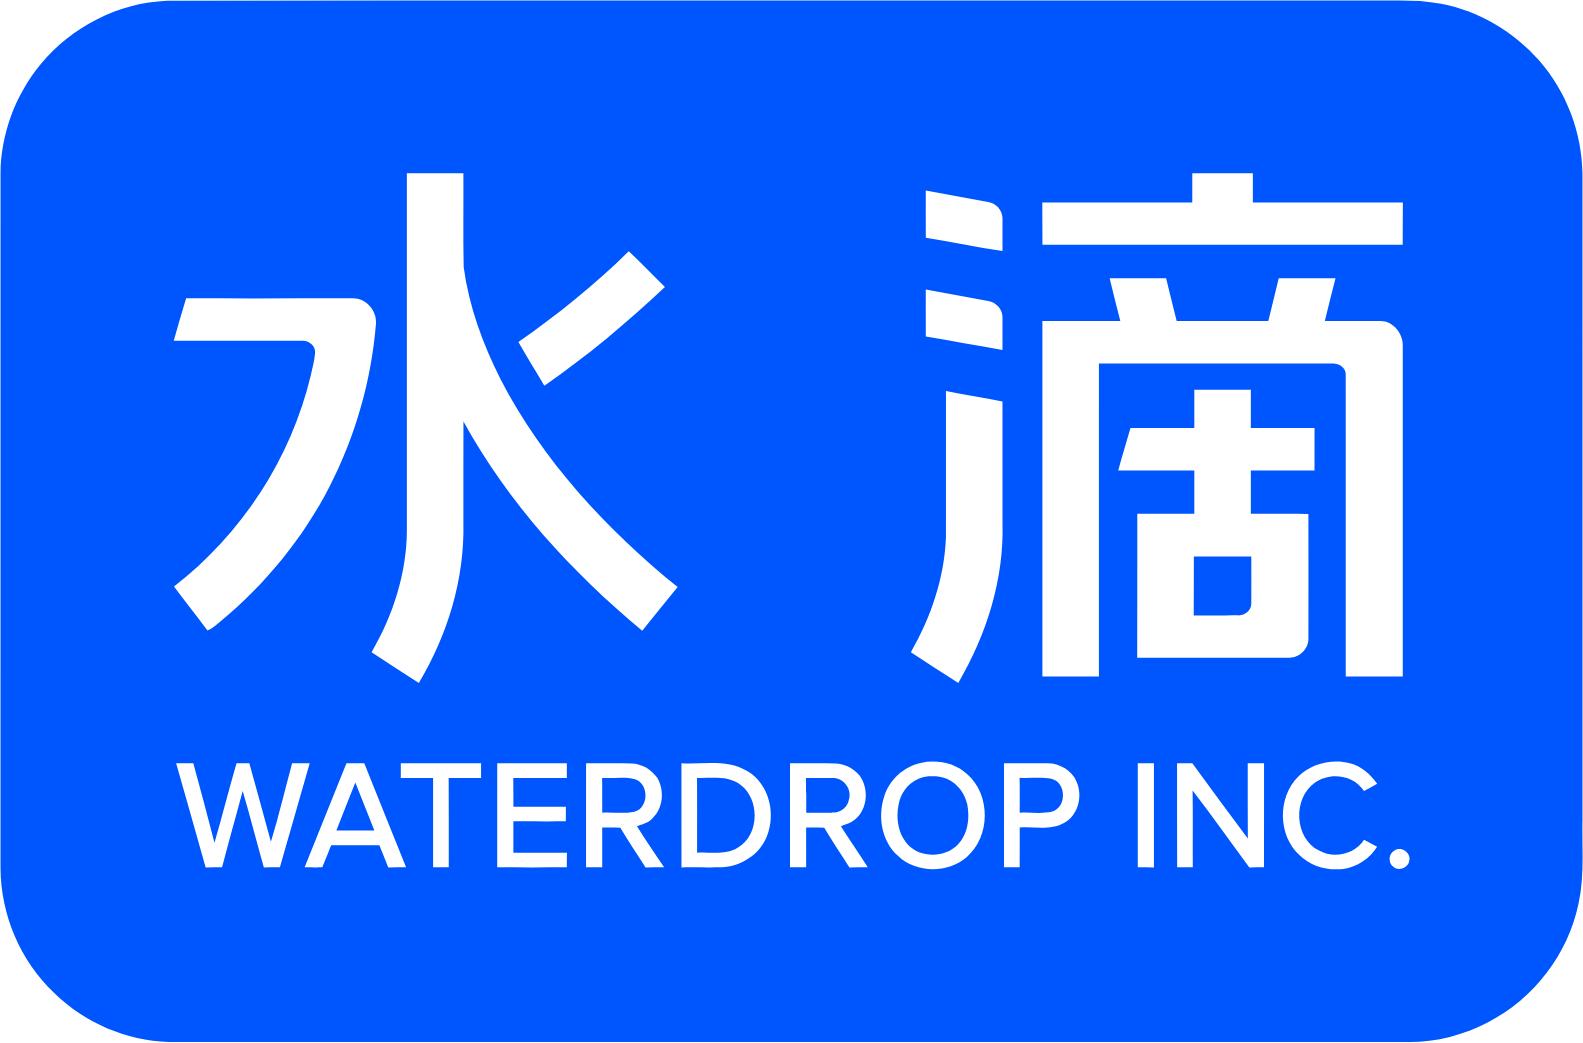 Waterdrop Inc. logo (transparent PNG)